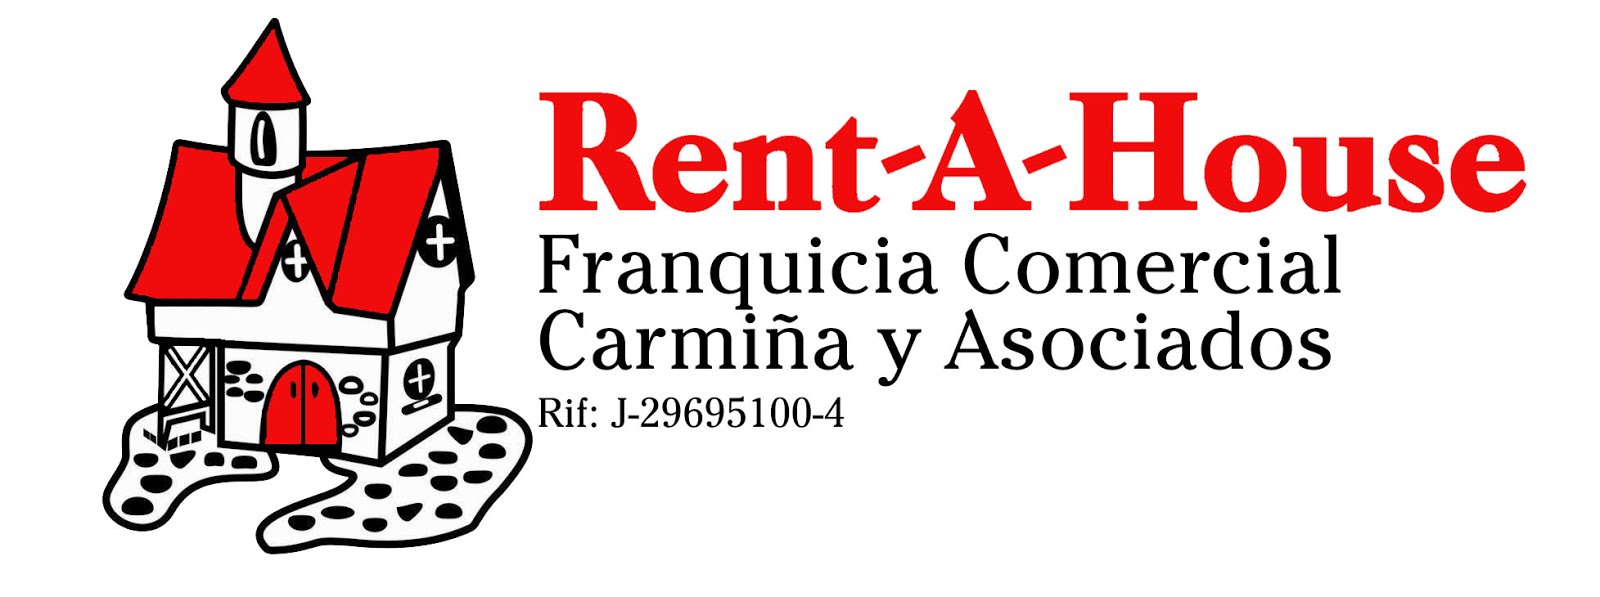 Inmuebles a tu gusto-Apartamentos y casas en venta en Maracaibo